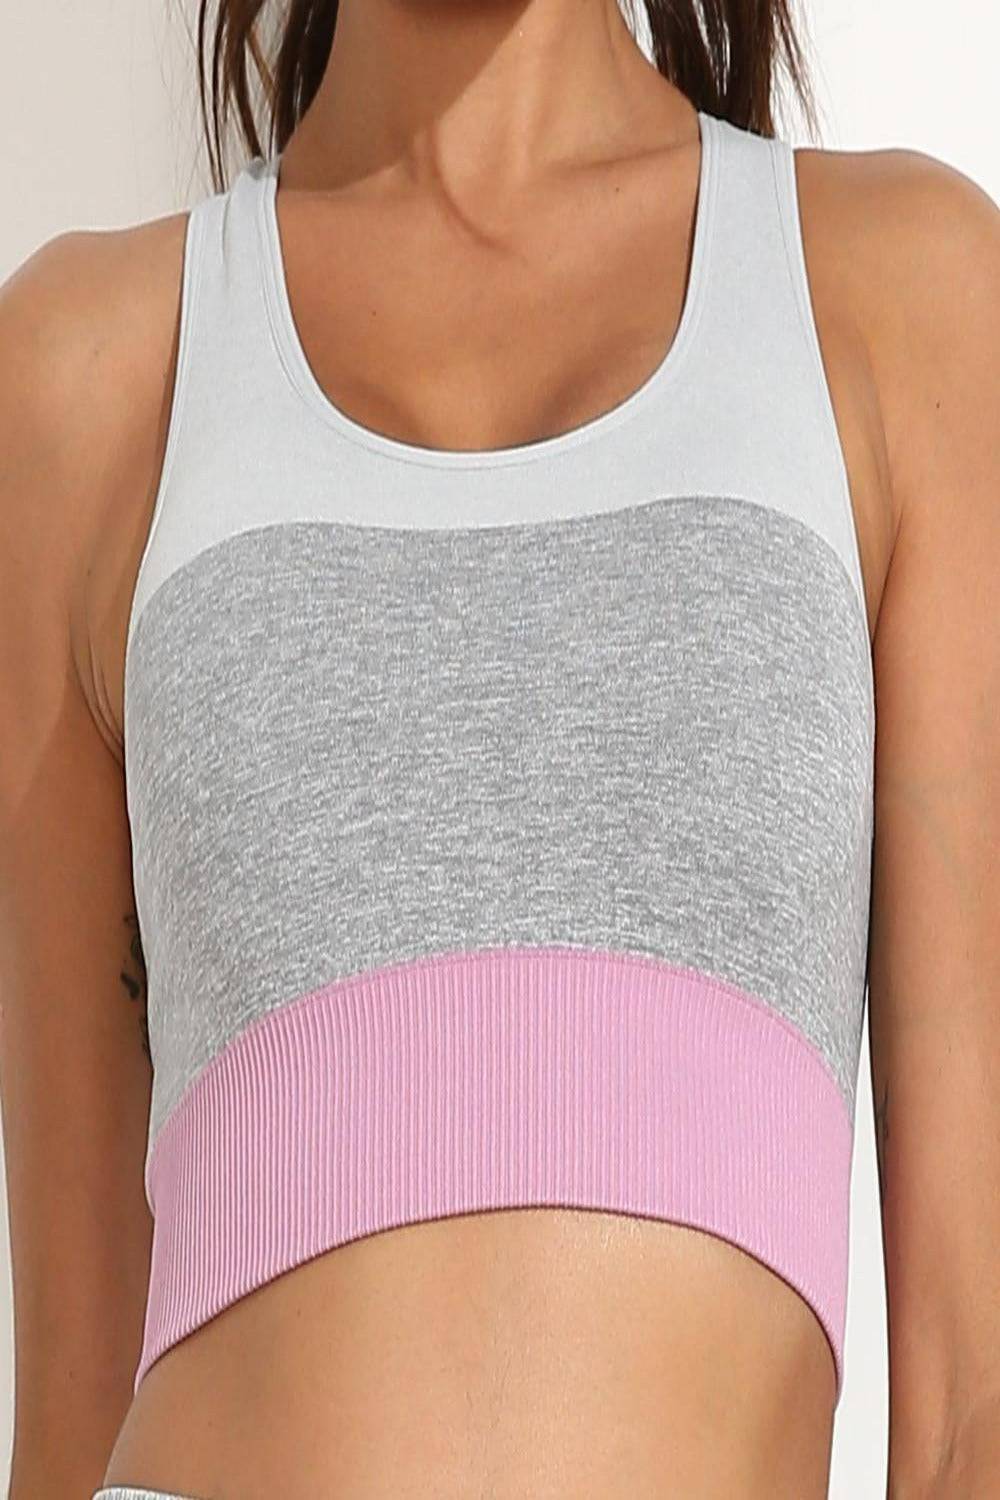 Squat Proof Patchwork Pink Workout Set - TGC Boutique - Activewear